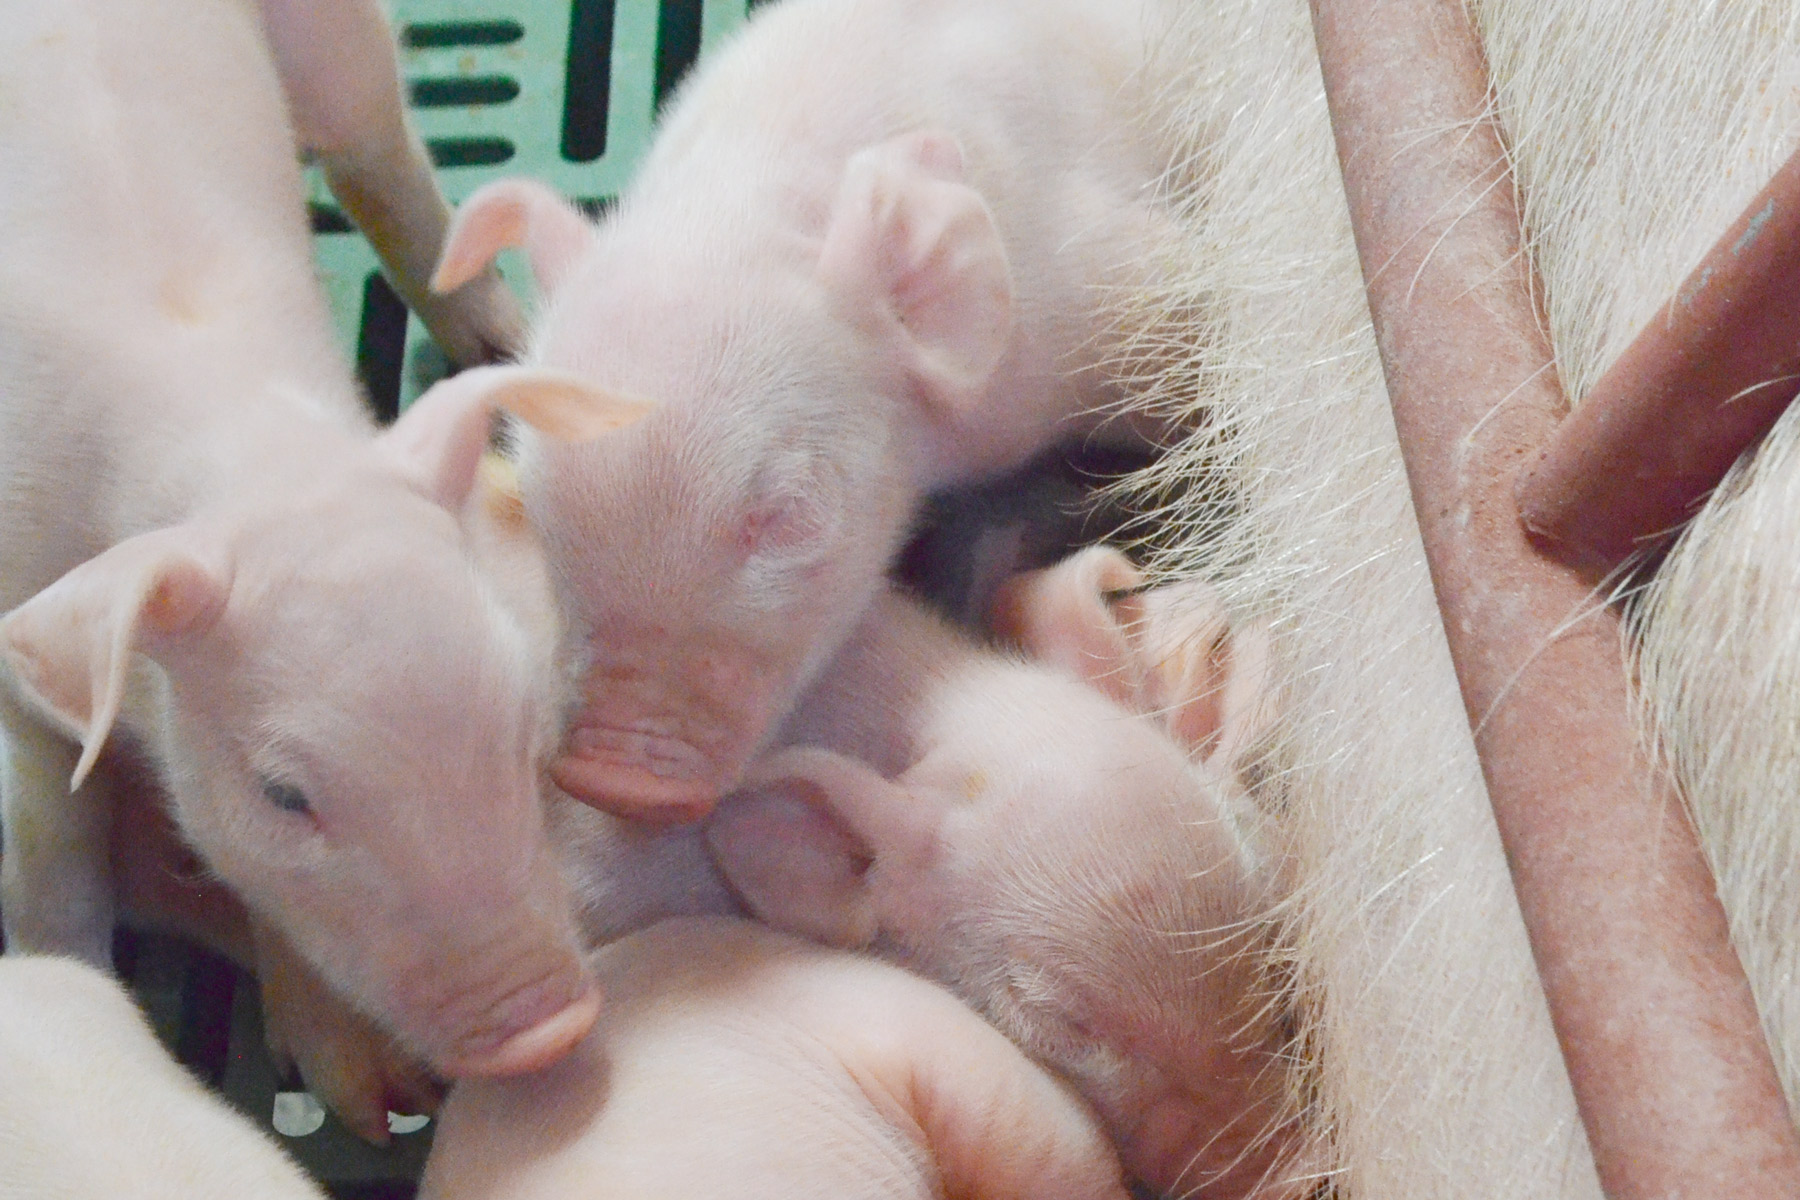 La crianza de cerdos es una de las actividades más importantes del sector pecuario mexicano